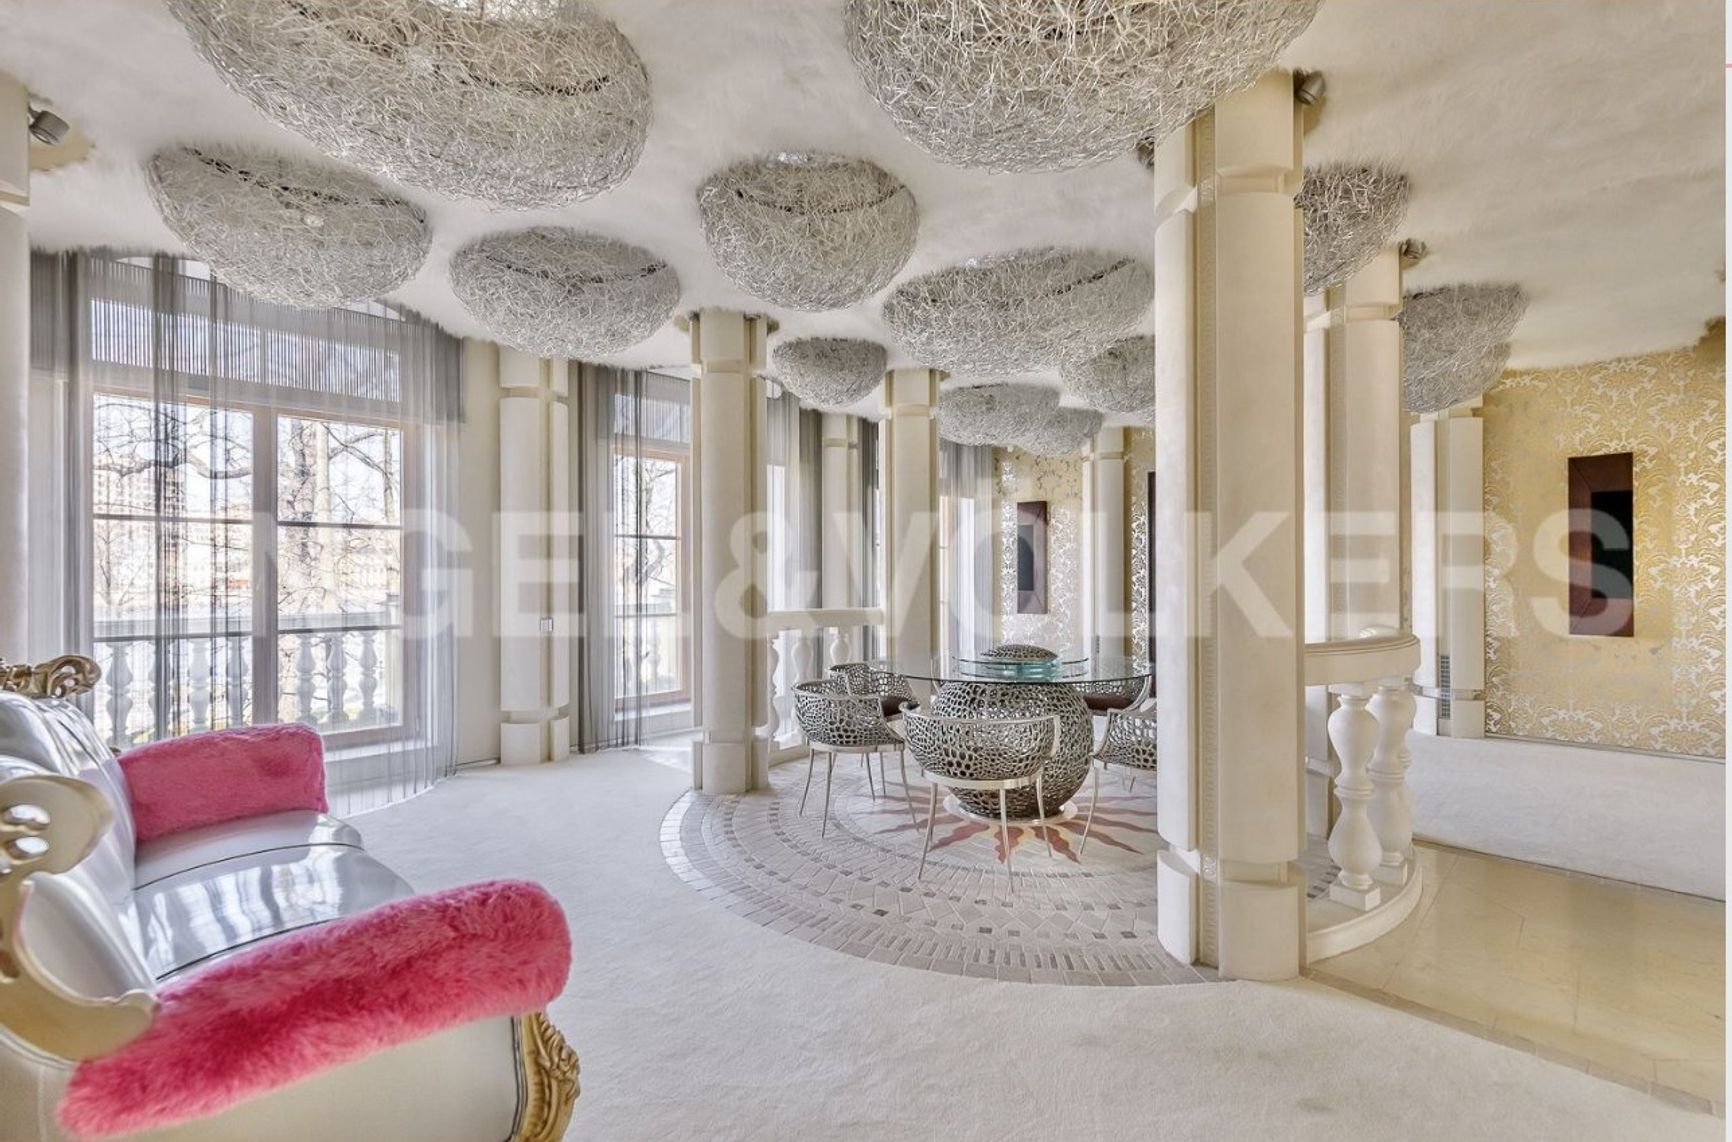 Кресло-гусеница и коконы на потолке: бывшая любовница Путина опубликовала интерьеры своей квартиры